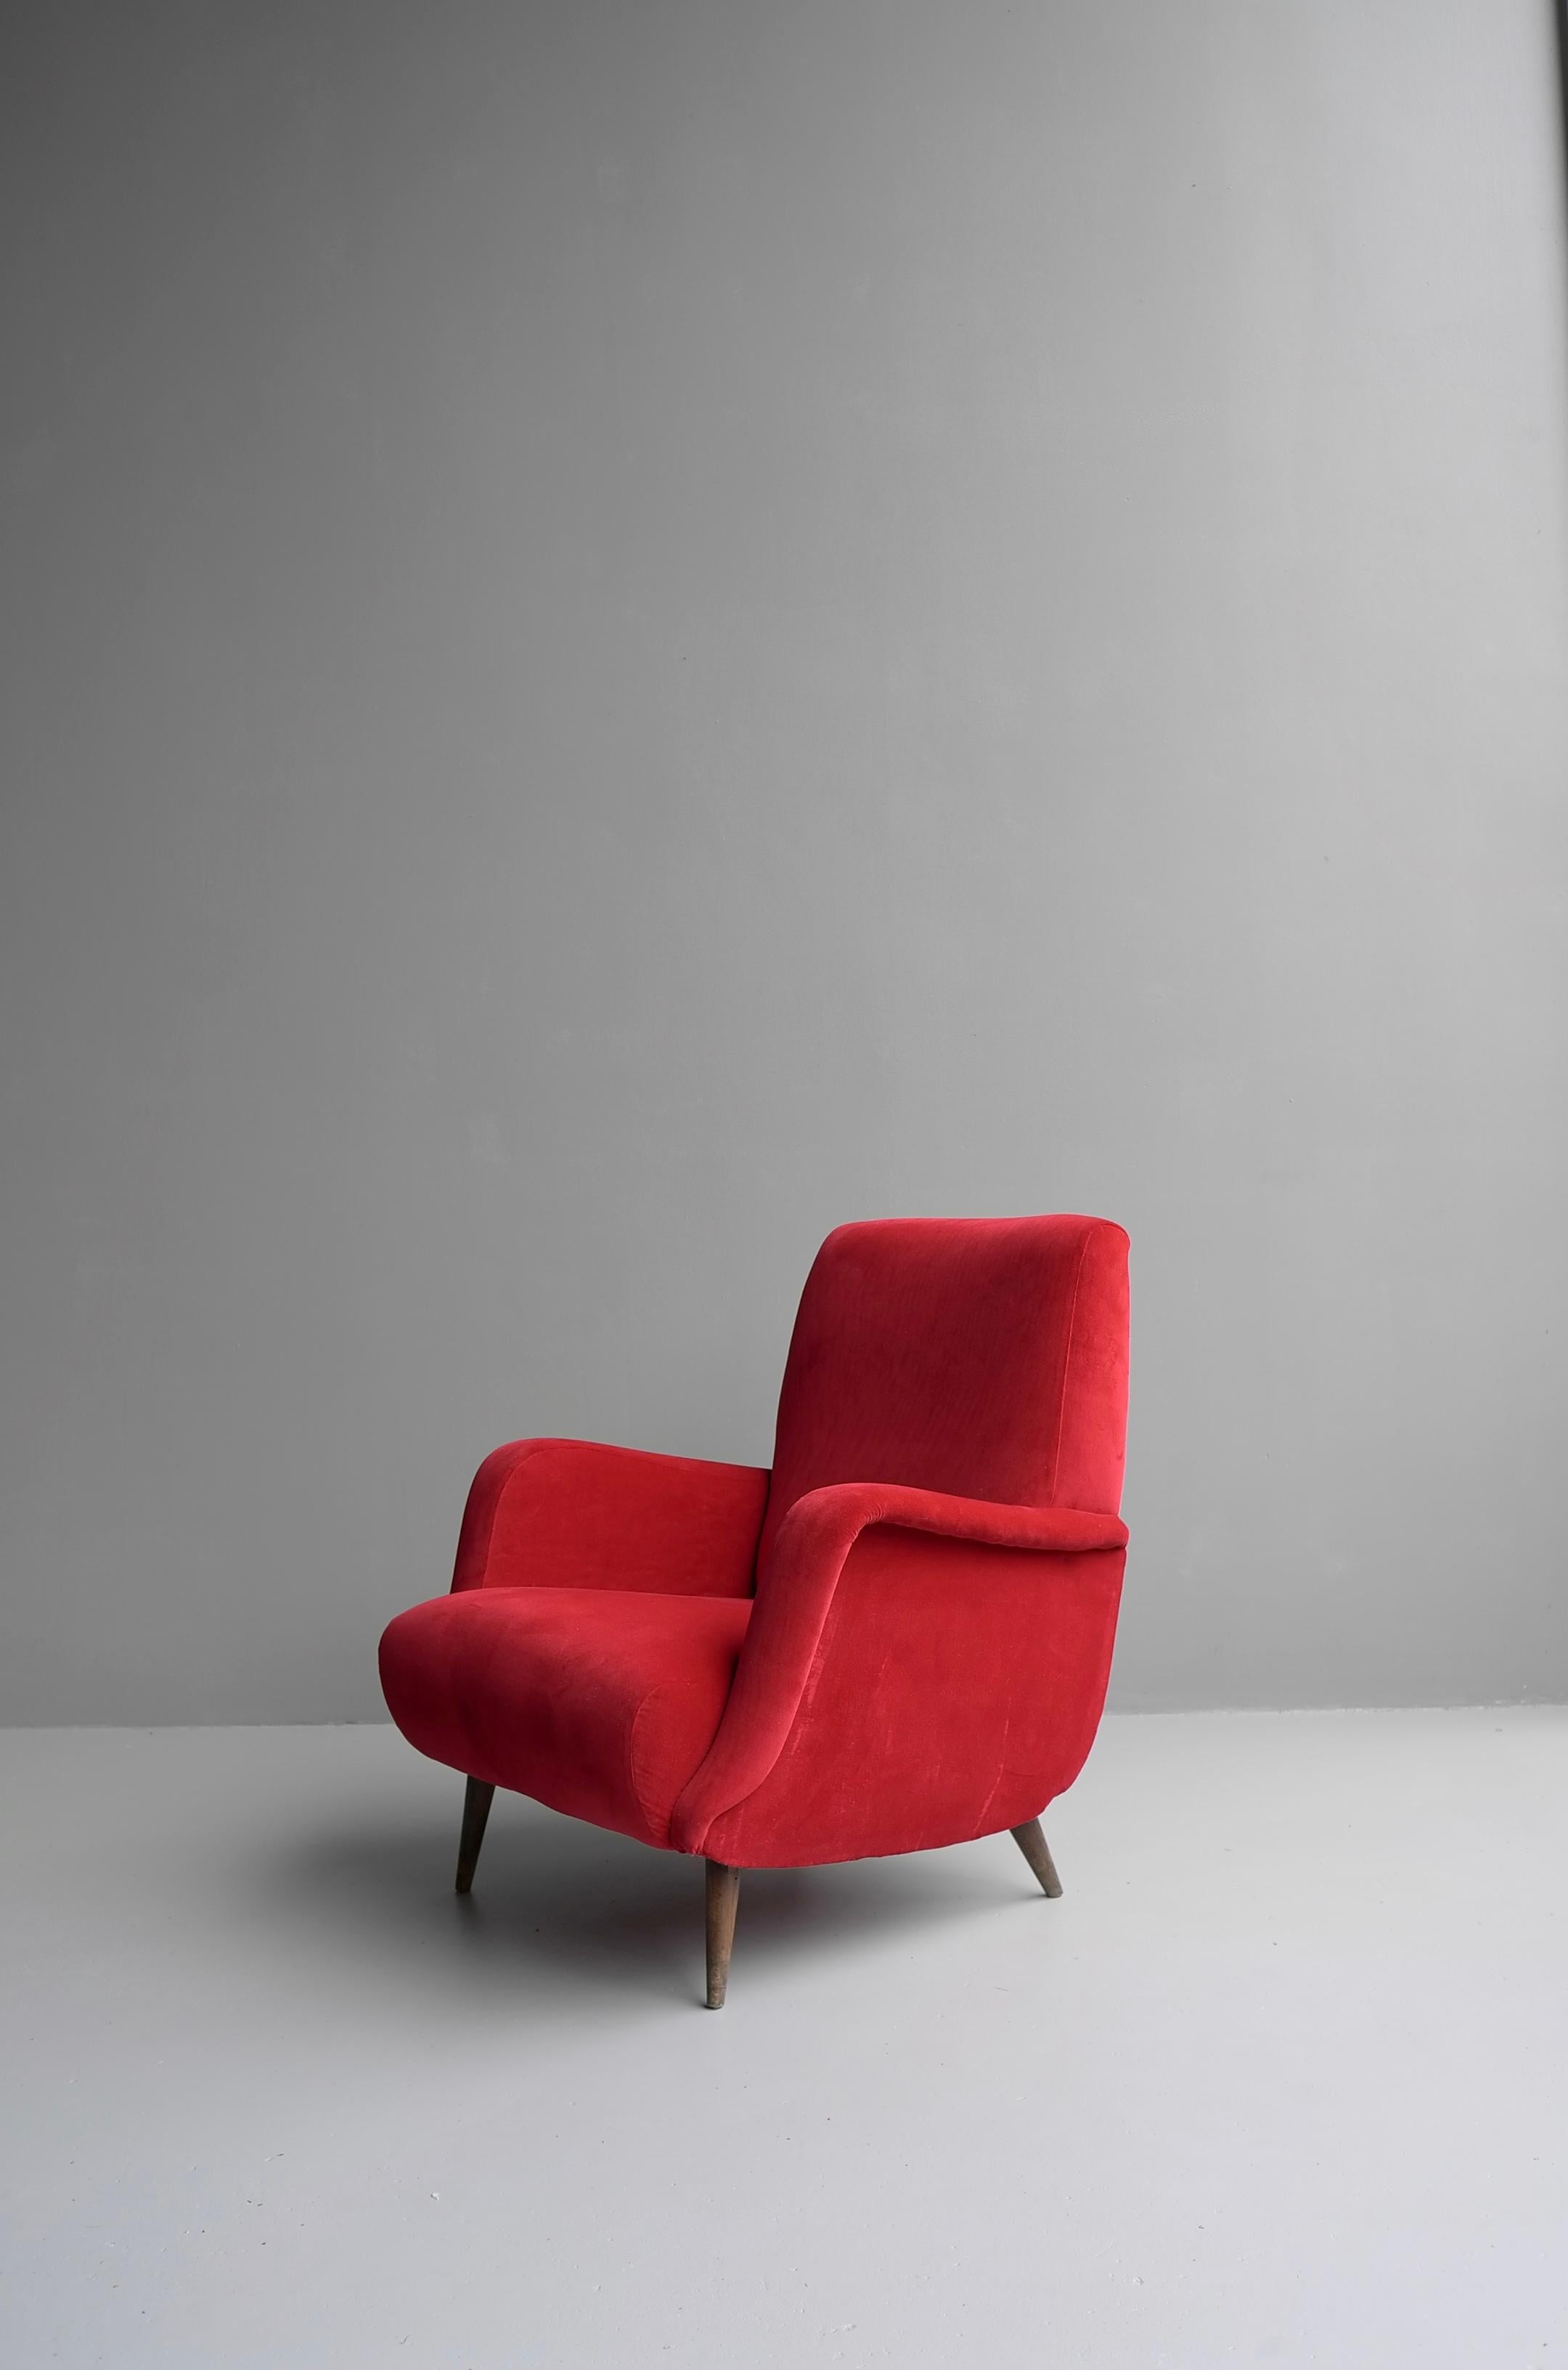 Roter Sessel Modell 806 von Carlo de Carli, Cassina, Italien 1955.
Er ist neuerdings mit einem samtartigen Stoff bezogen. Die Beine sind aus massivem Nussbaumholz gefertigt.